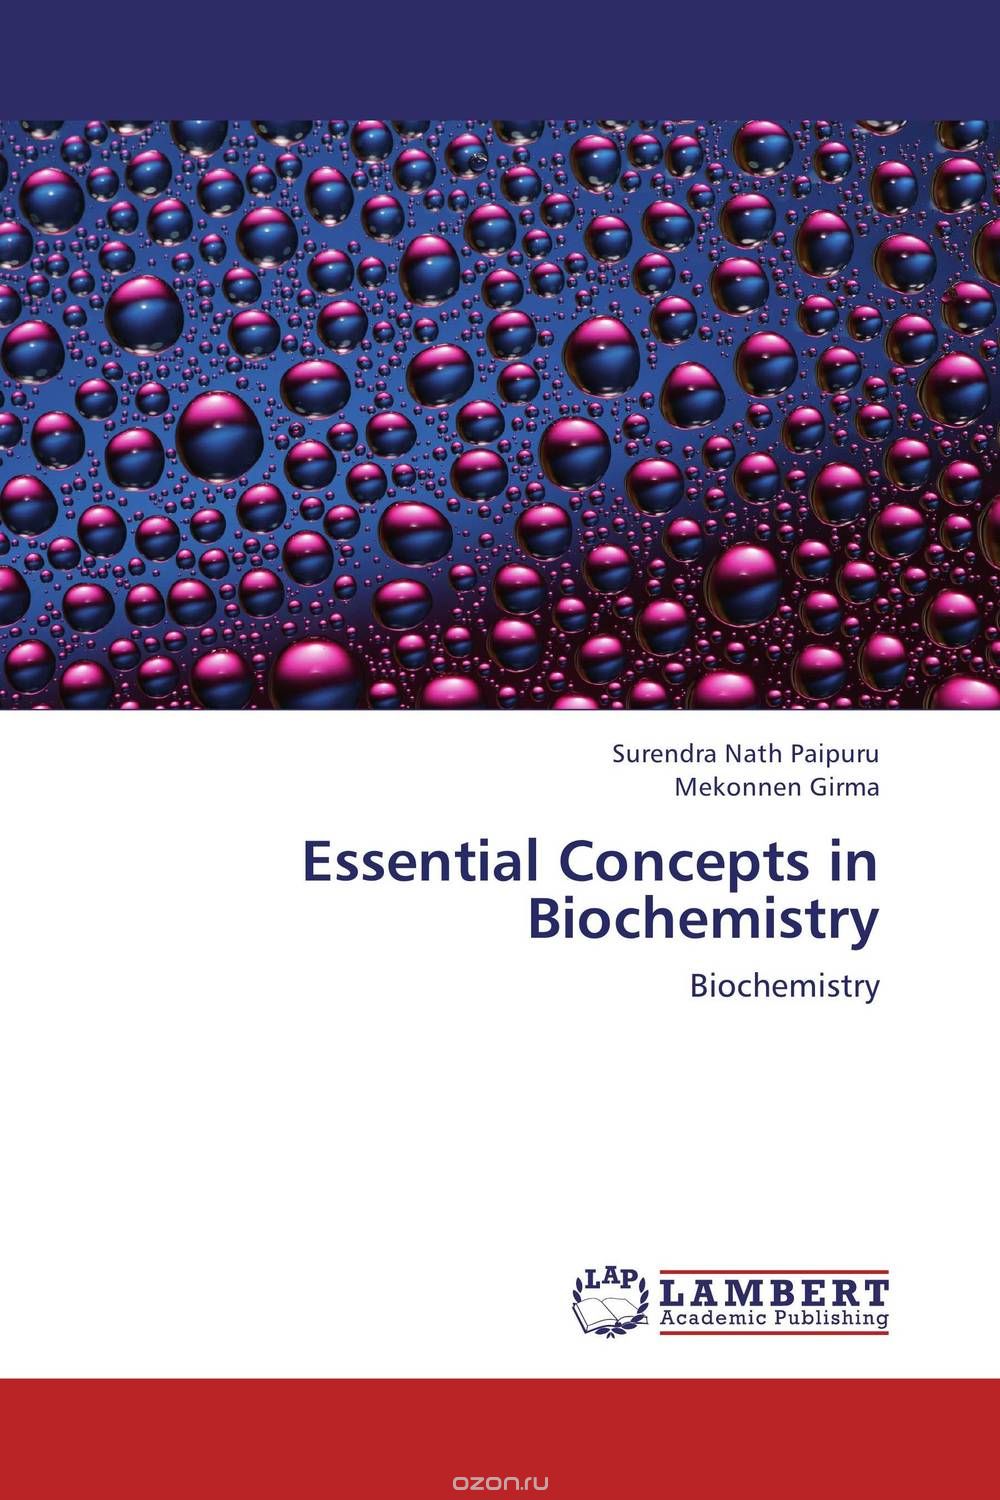 Скачать книгу "Essential Concepts in Biochemistry"